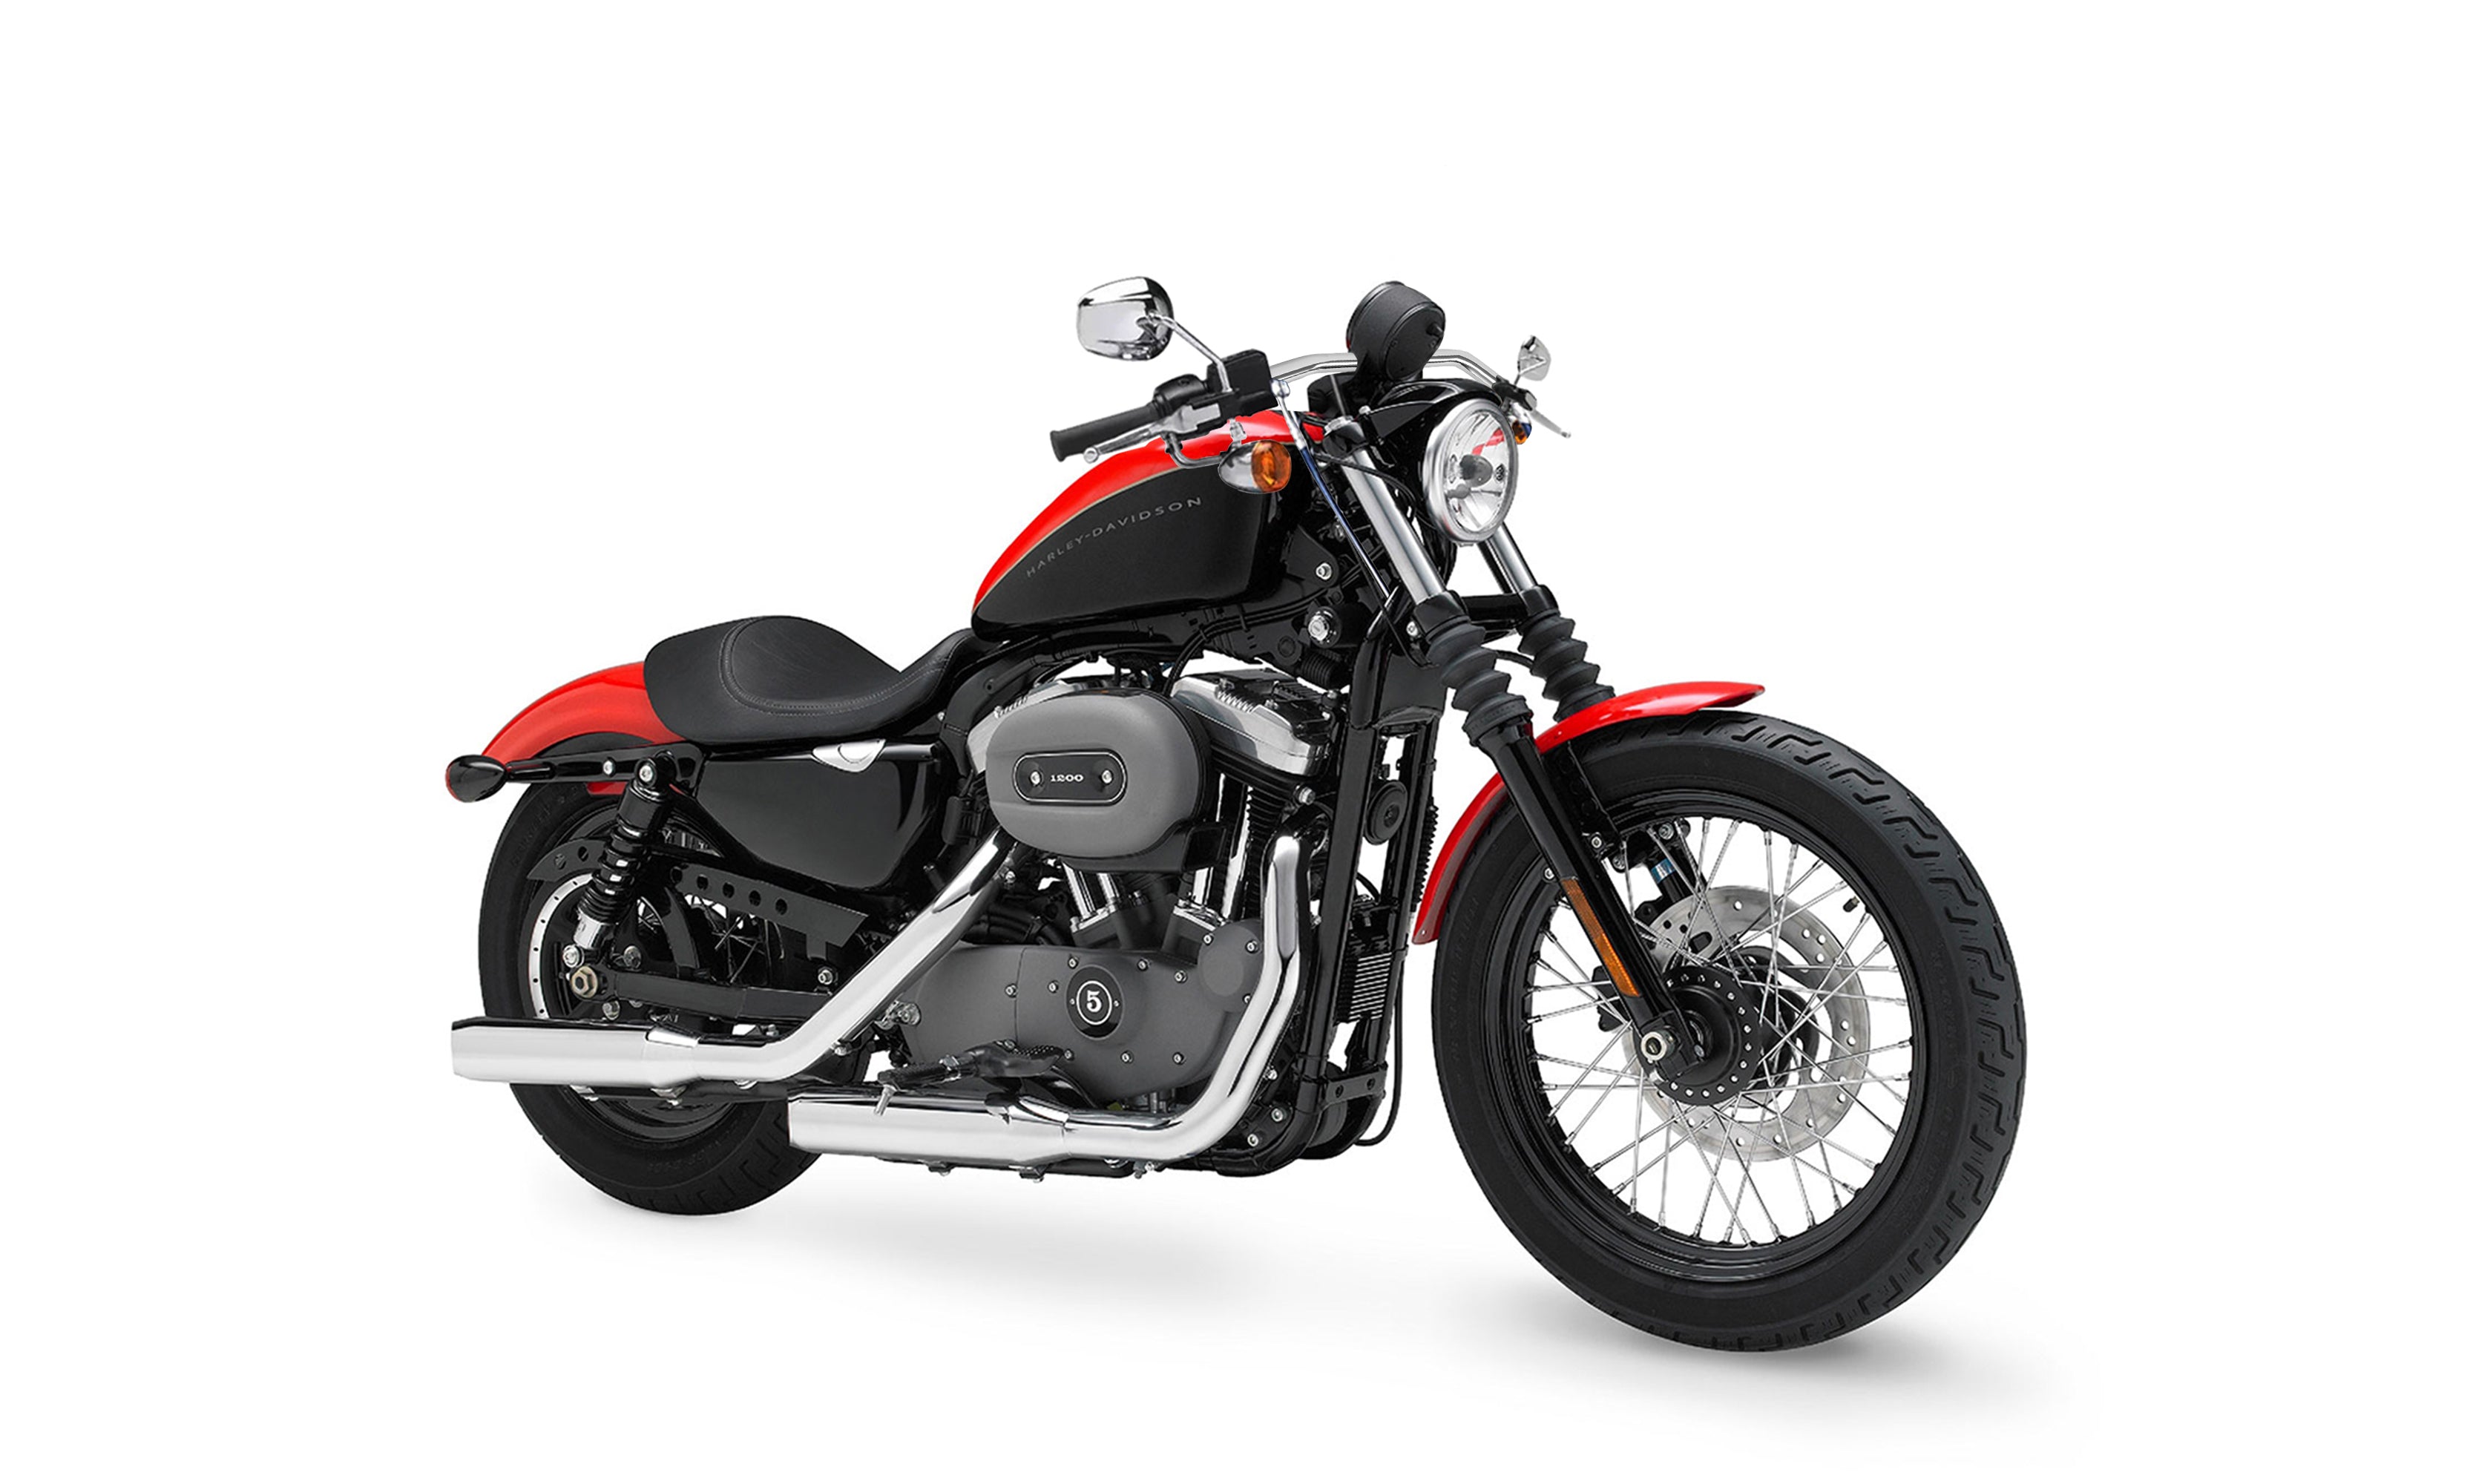 Viking Iron Born Drag Handlebar For Harley Sportster 1200 Nightster XL1200N Chrome on Bike @expand